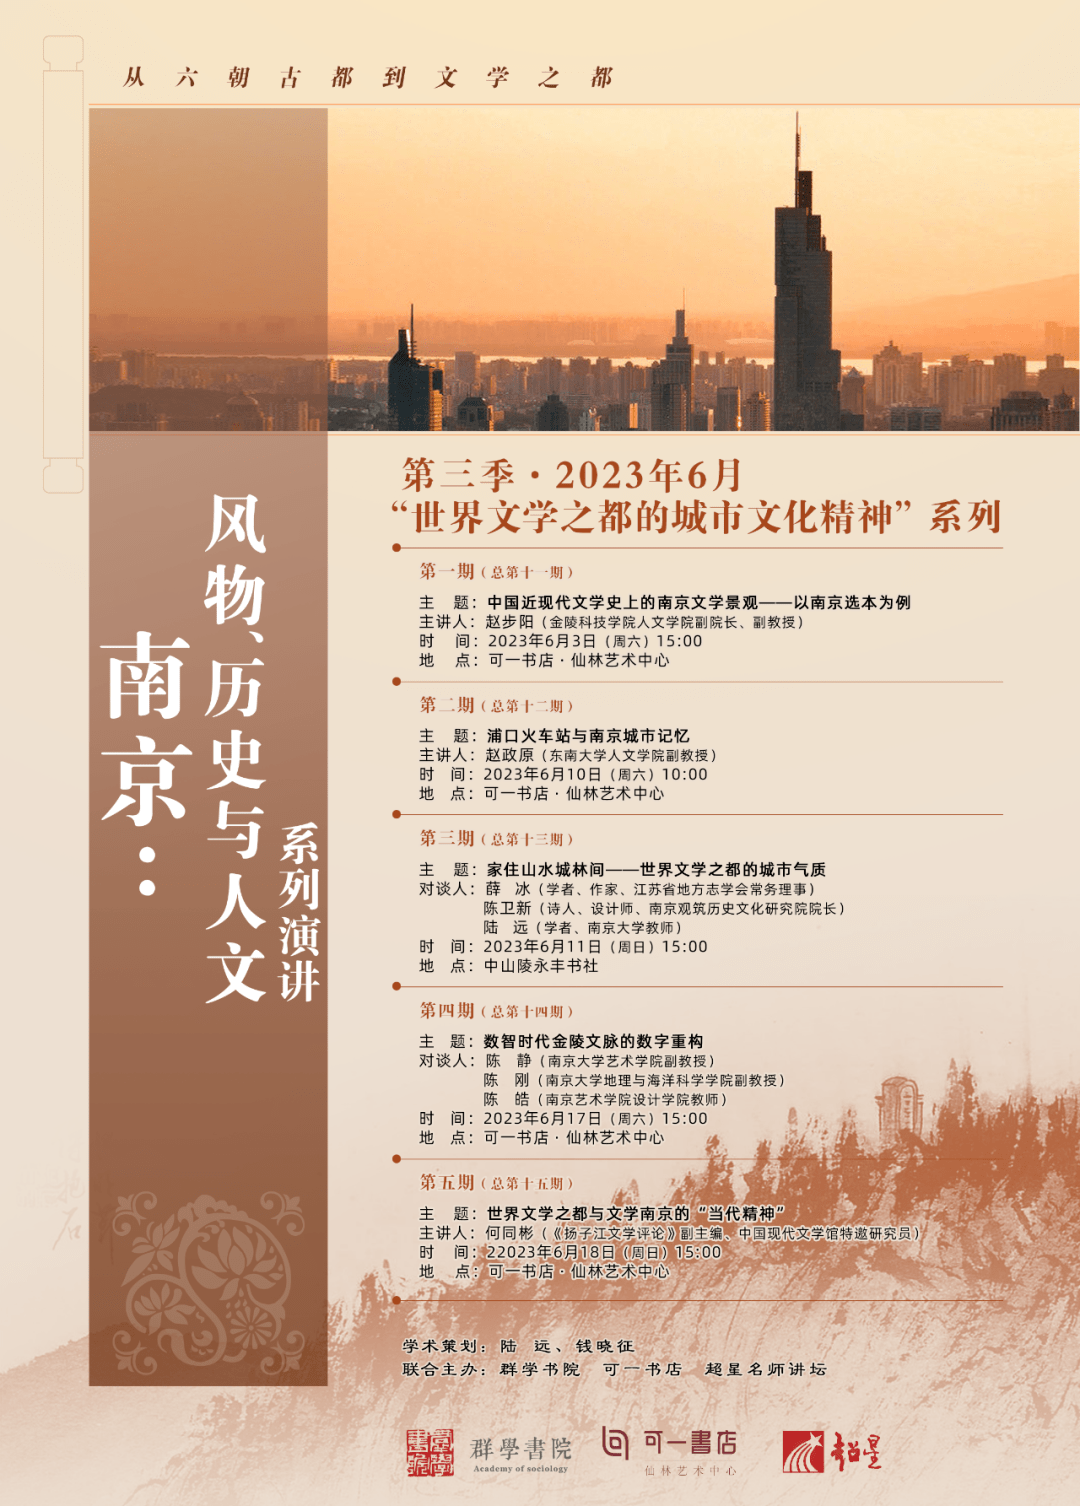 摧毁城堡
:世界文学之都的城市文化精神 | “南京：风物、历史与人文”演讲第三季